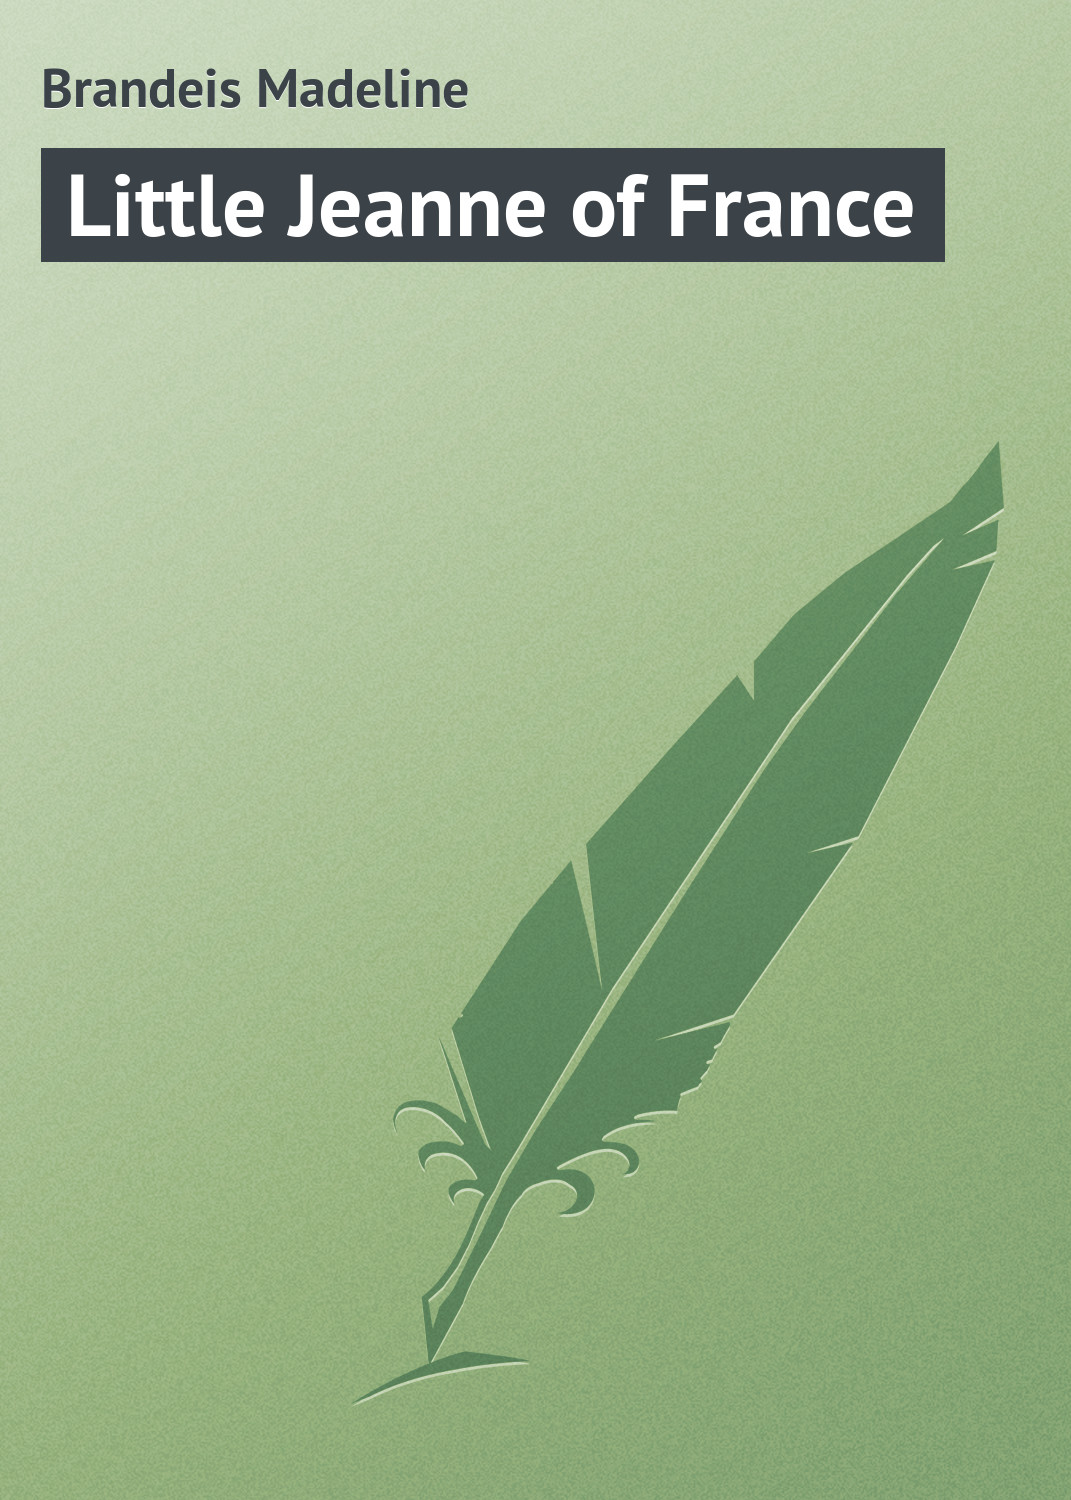 Книга Little Jeanne of France из серии , созданная Madeline Brandeis, может относится к жанру Зарубежная классика, Зарубежные детские книги. Стоимость электронной книги Little Jeanne of France с идентификатором 23155235 составляет 5.99 руб.